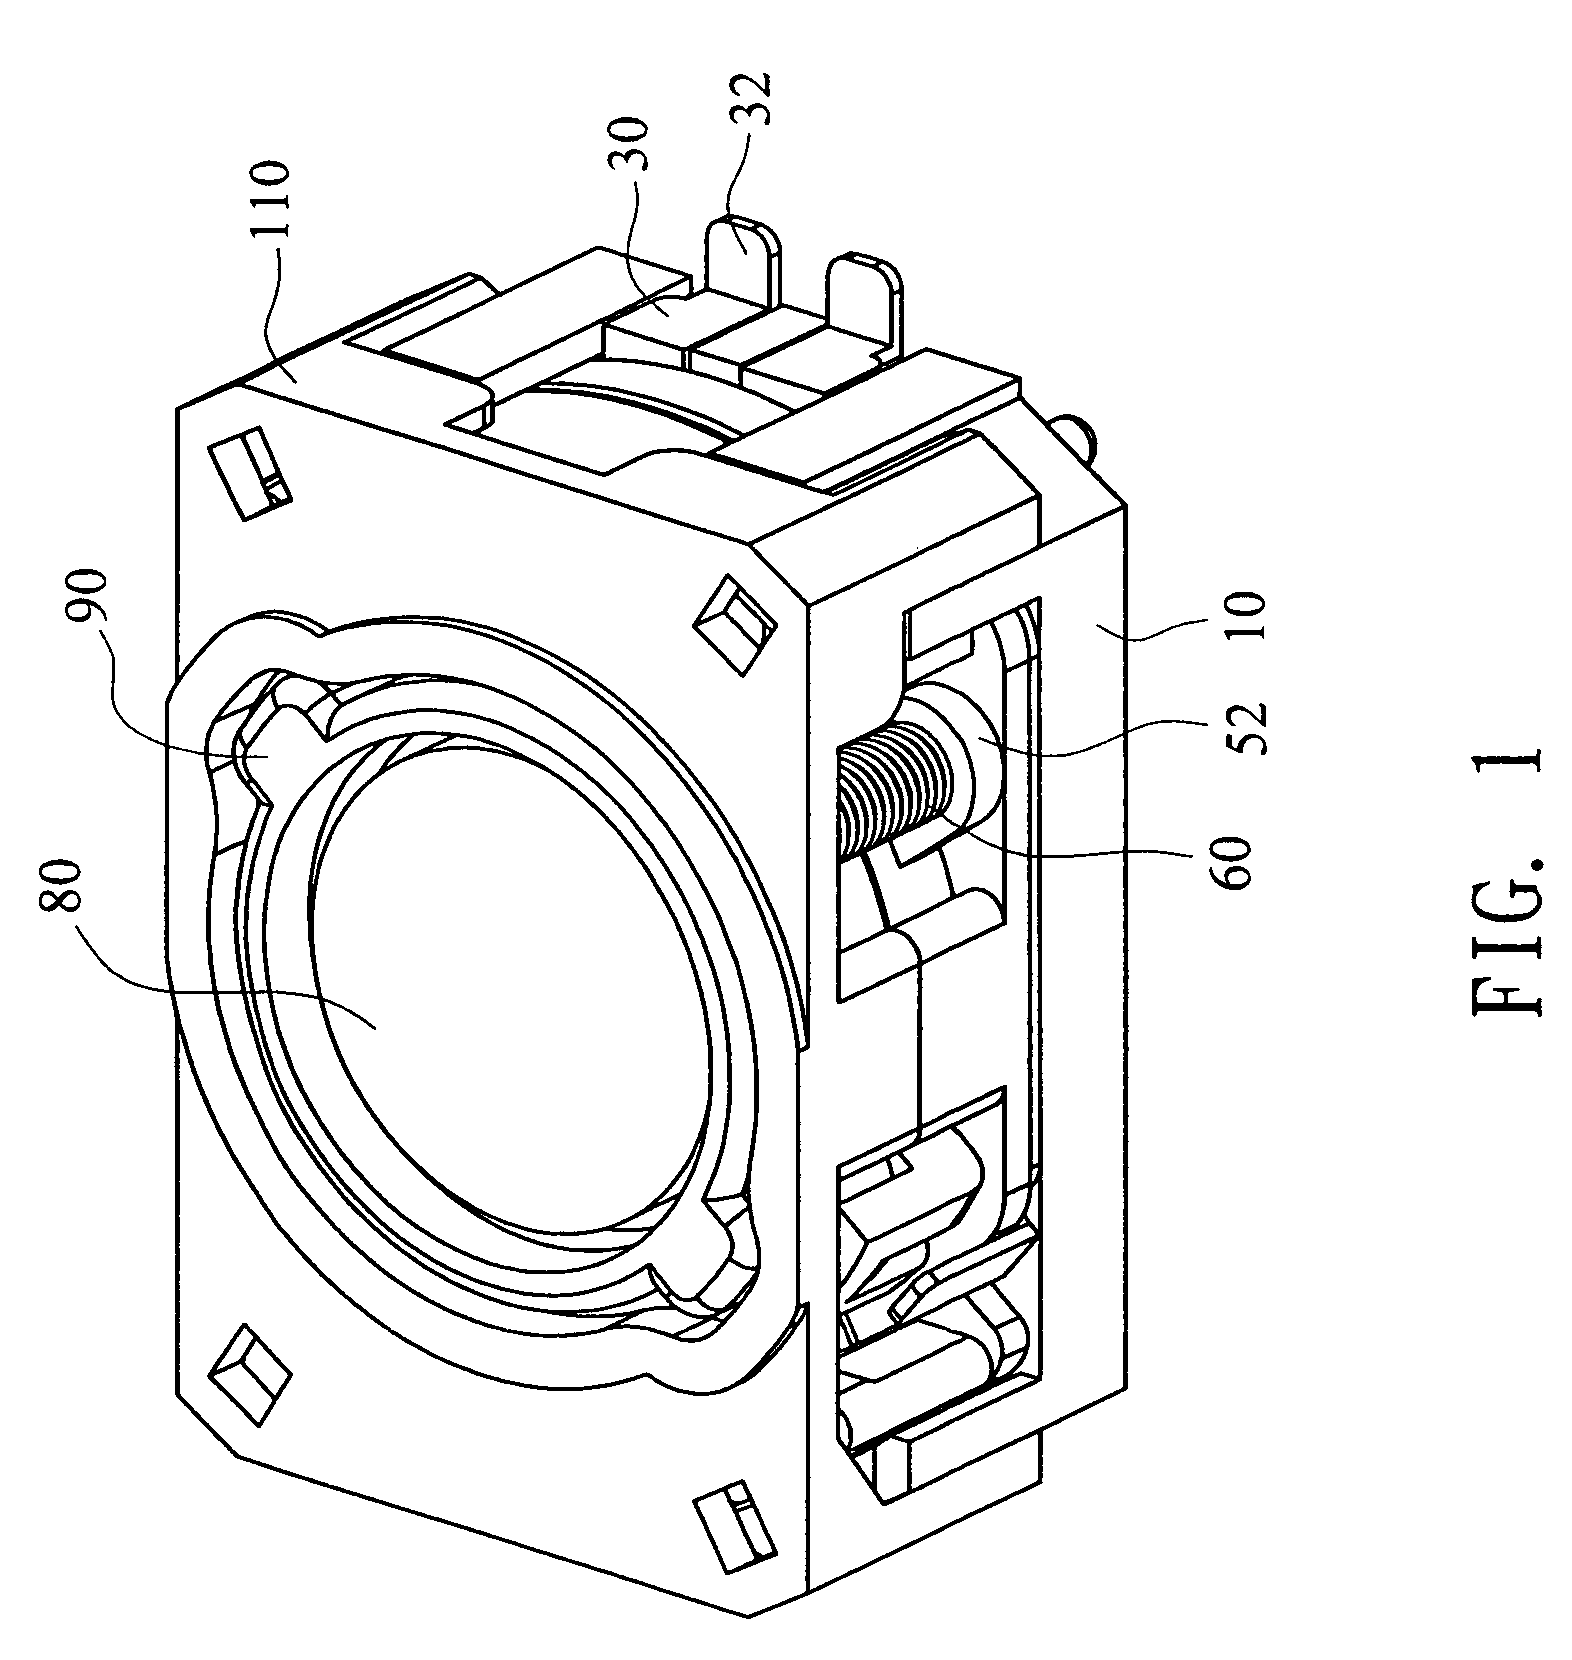 Auto-focus lens module